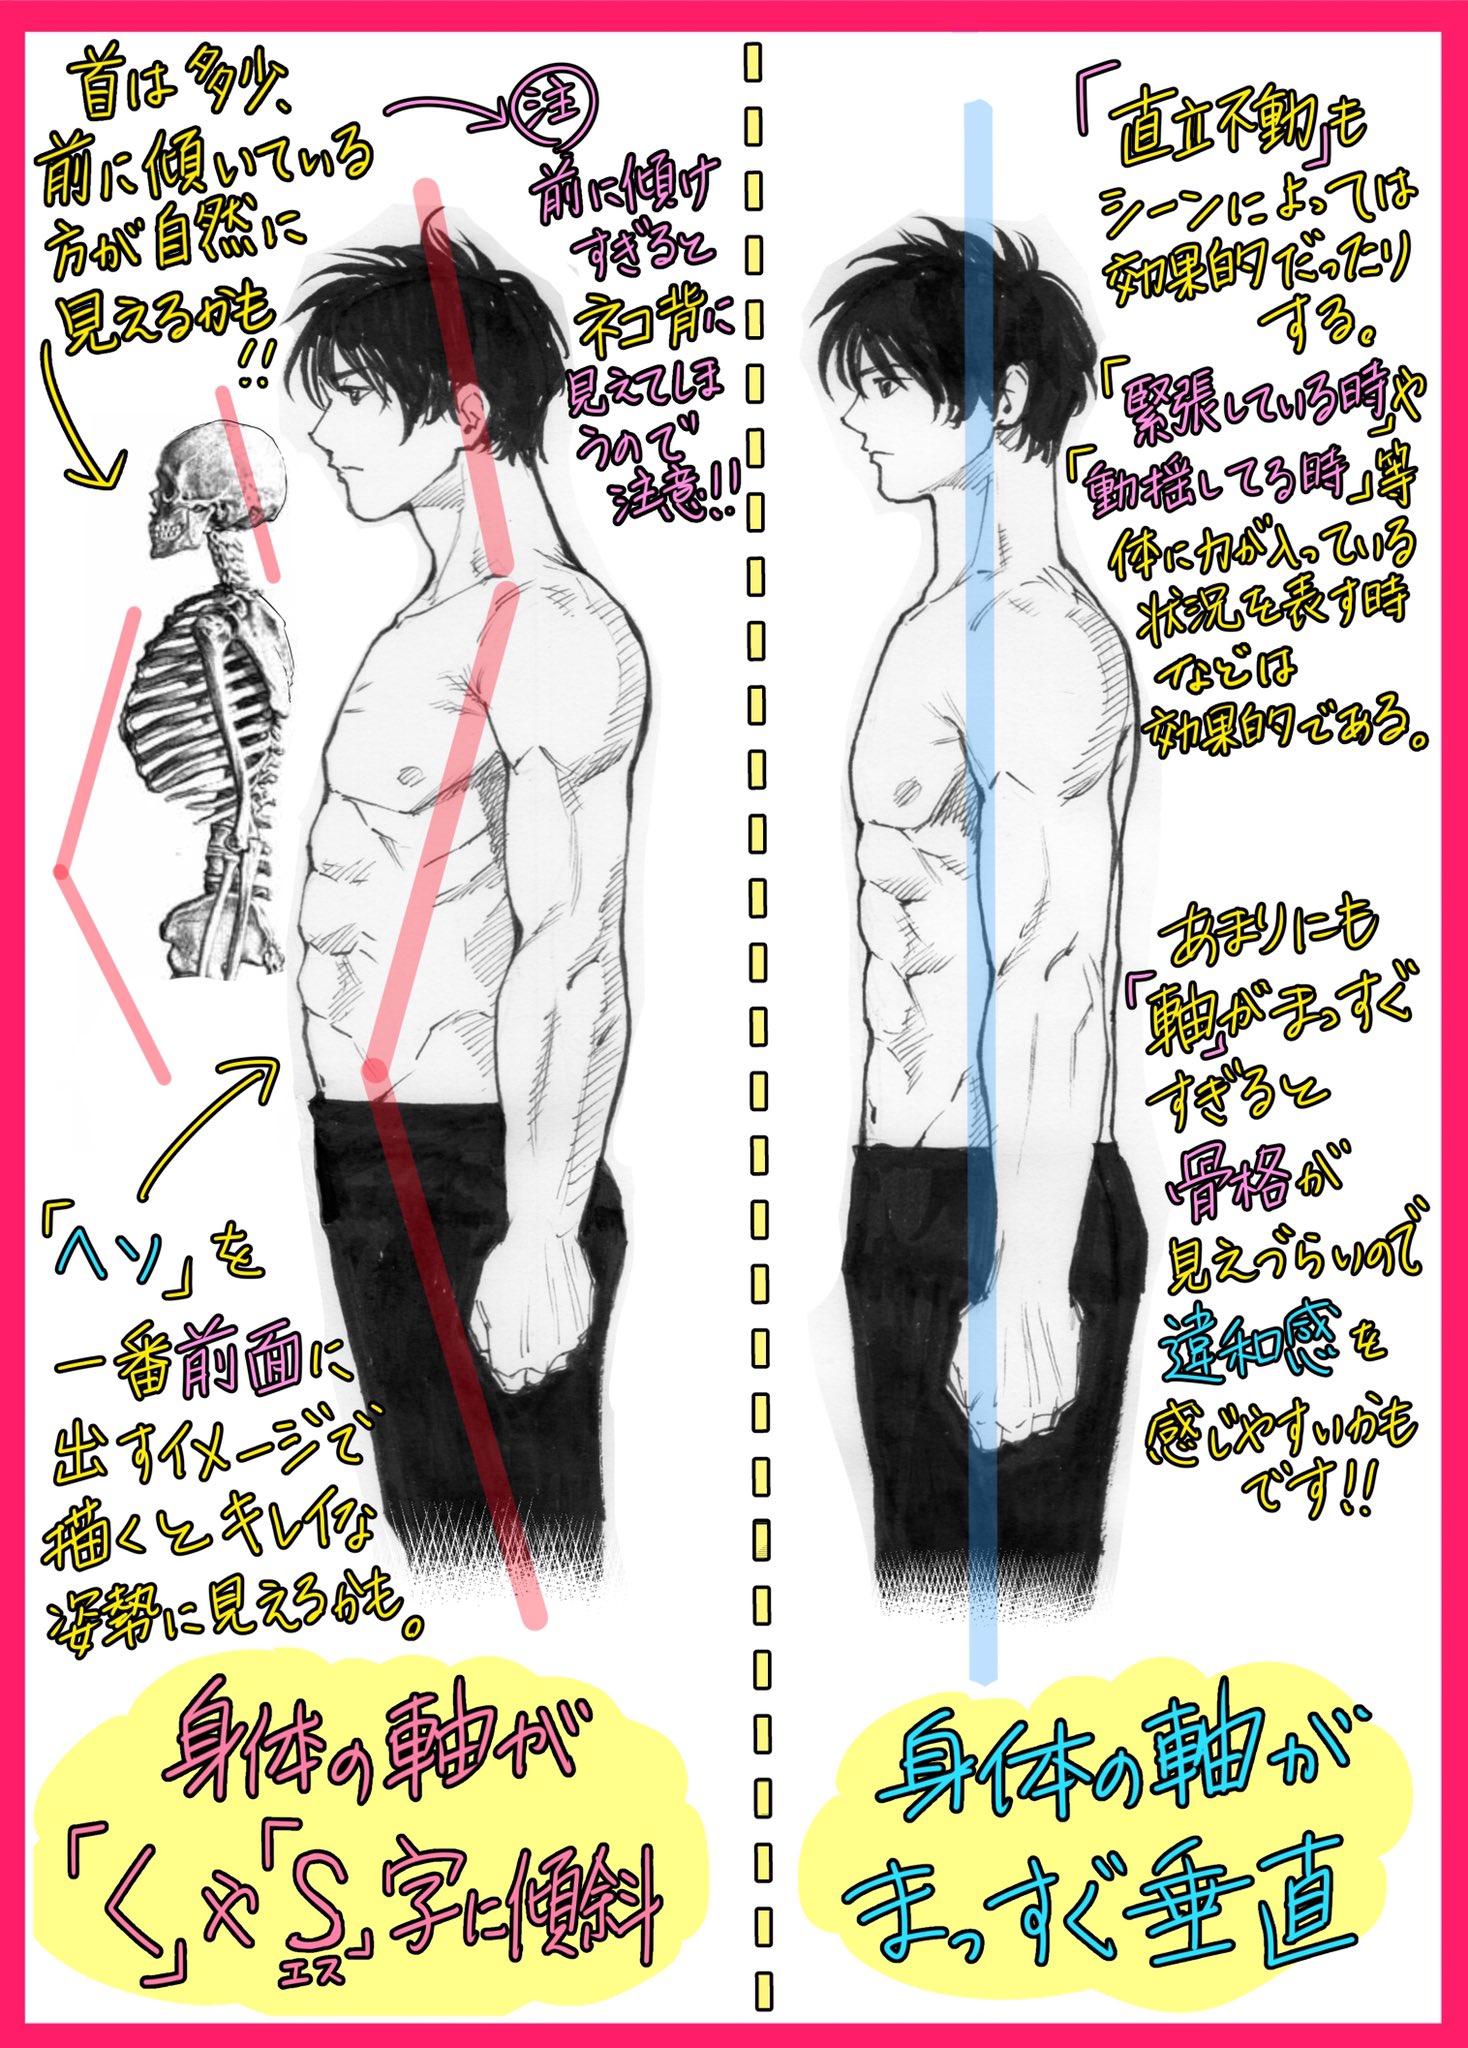 吉村拓也 イラスト講座 男性の筋肉の描き方 フカン視点や横アングルが上達する 3ページ講座 です T Co Smaccq8xbt Twitter